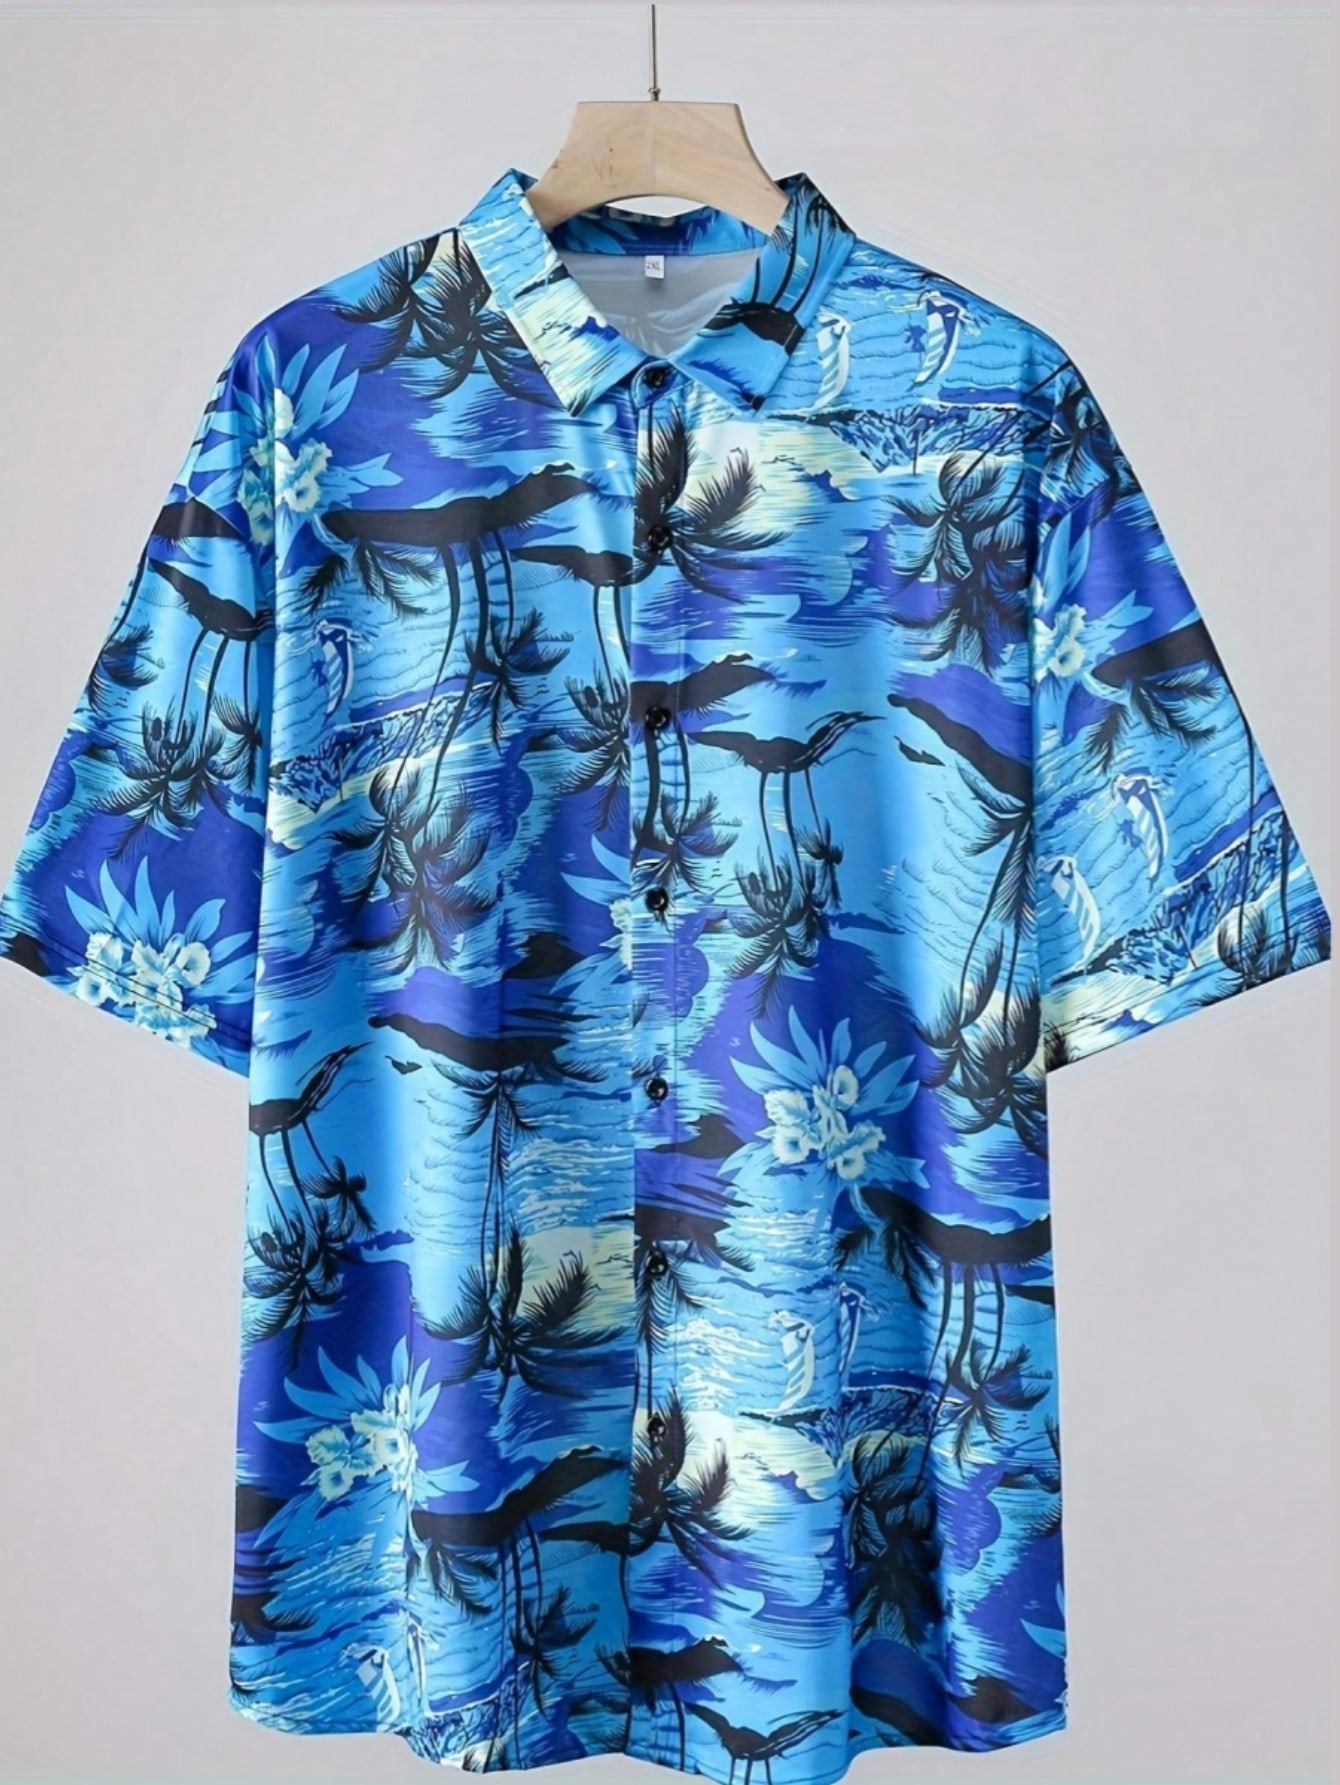 Мужская рубашка больших размеров с коротким рукавом и тропическим растительным принтом, синий